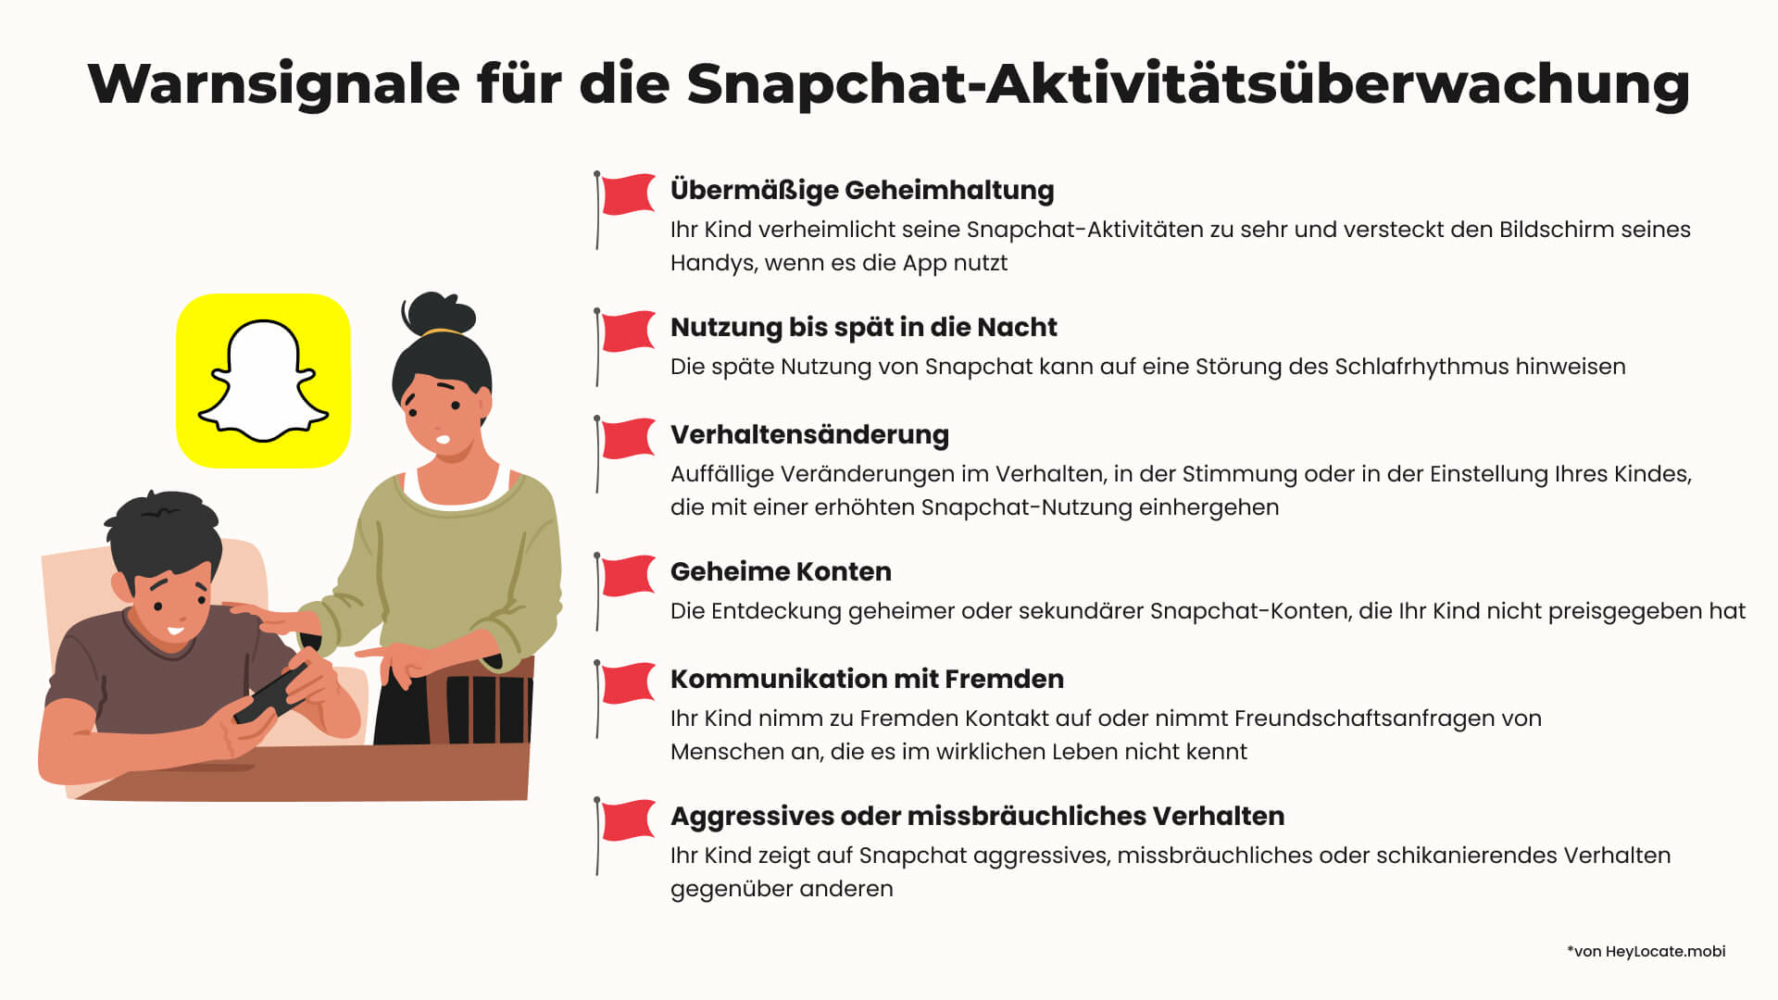 Liste der Anzeichen, wann es Zeit ist, das Snapchat der Kinder zu überprüfen 
- HeyLocate Infografik